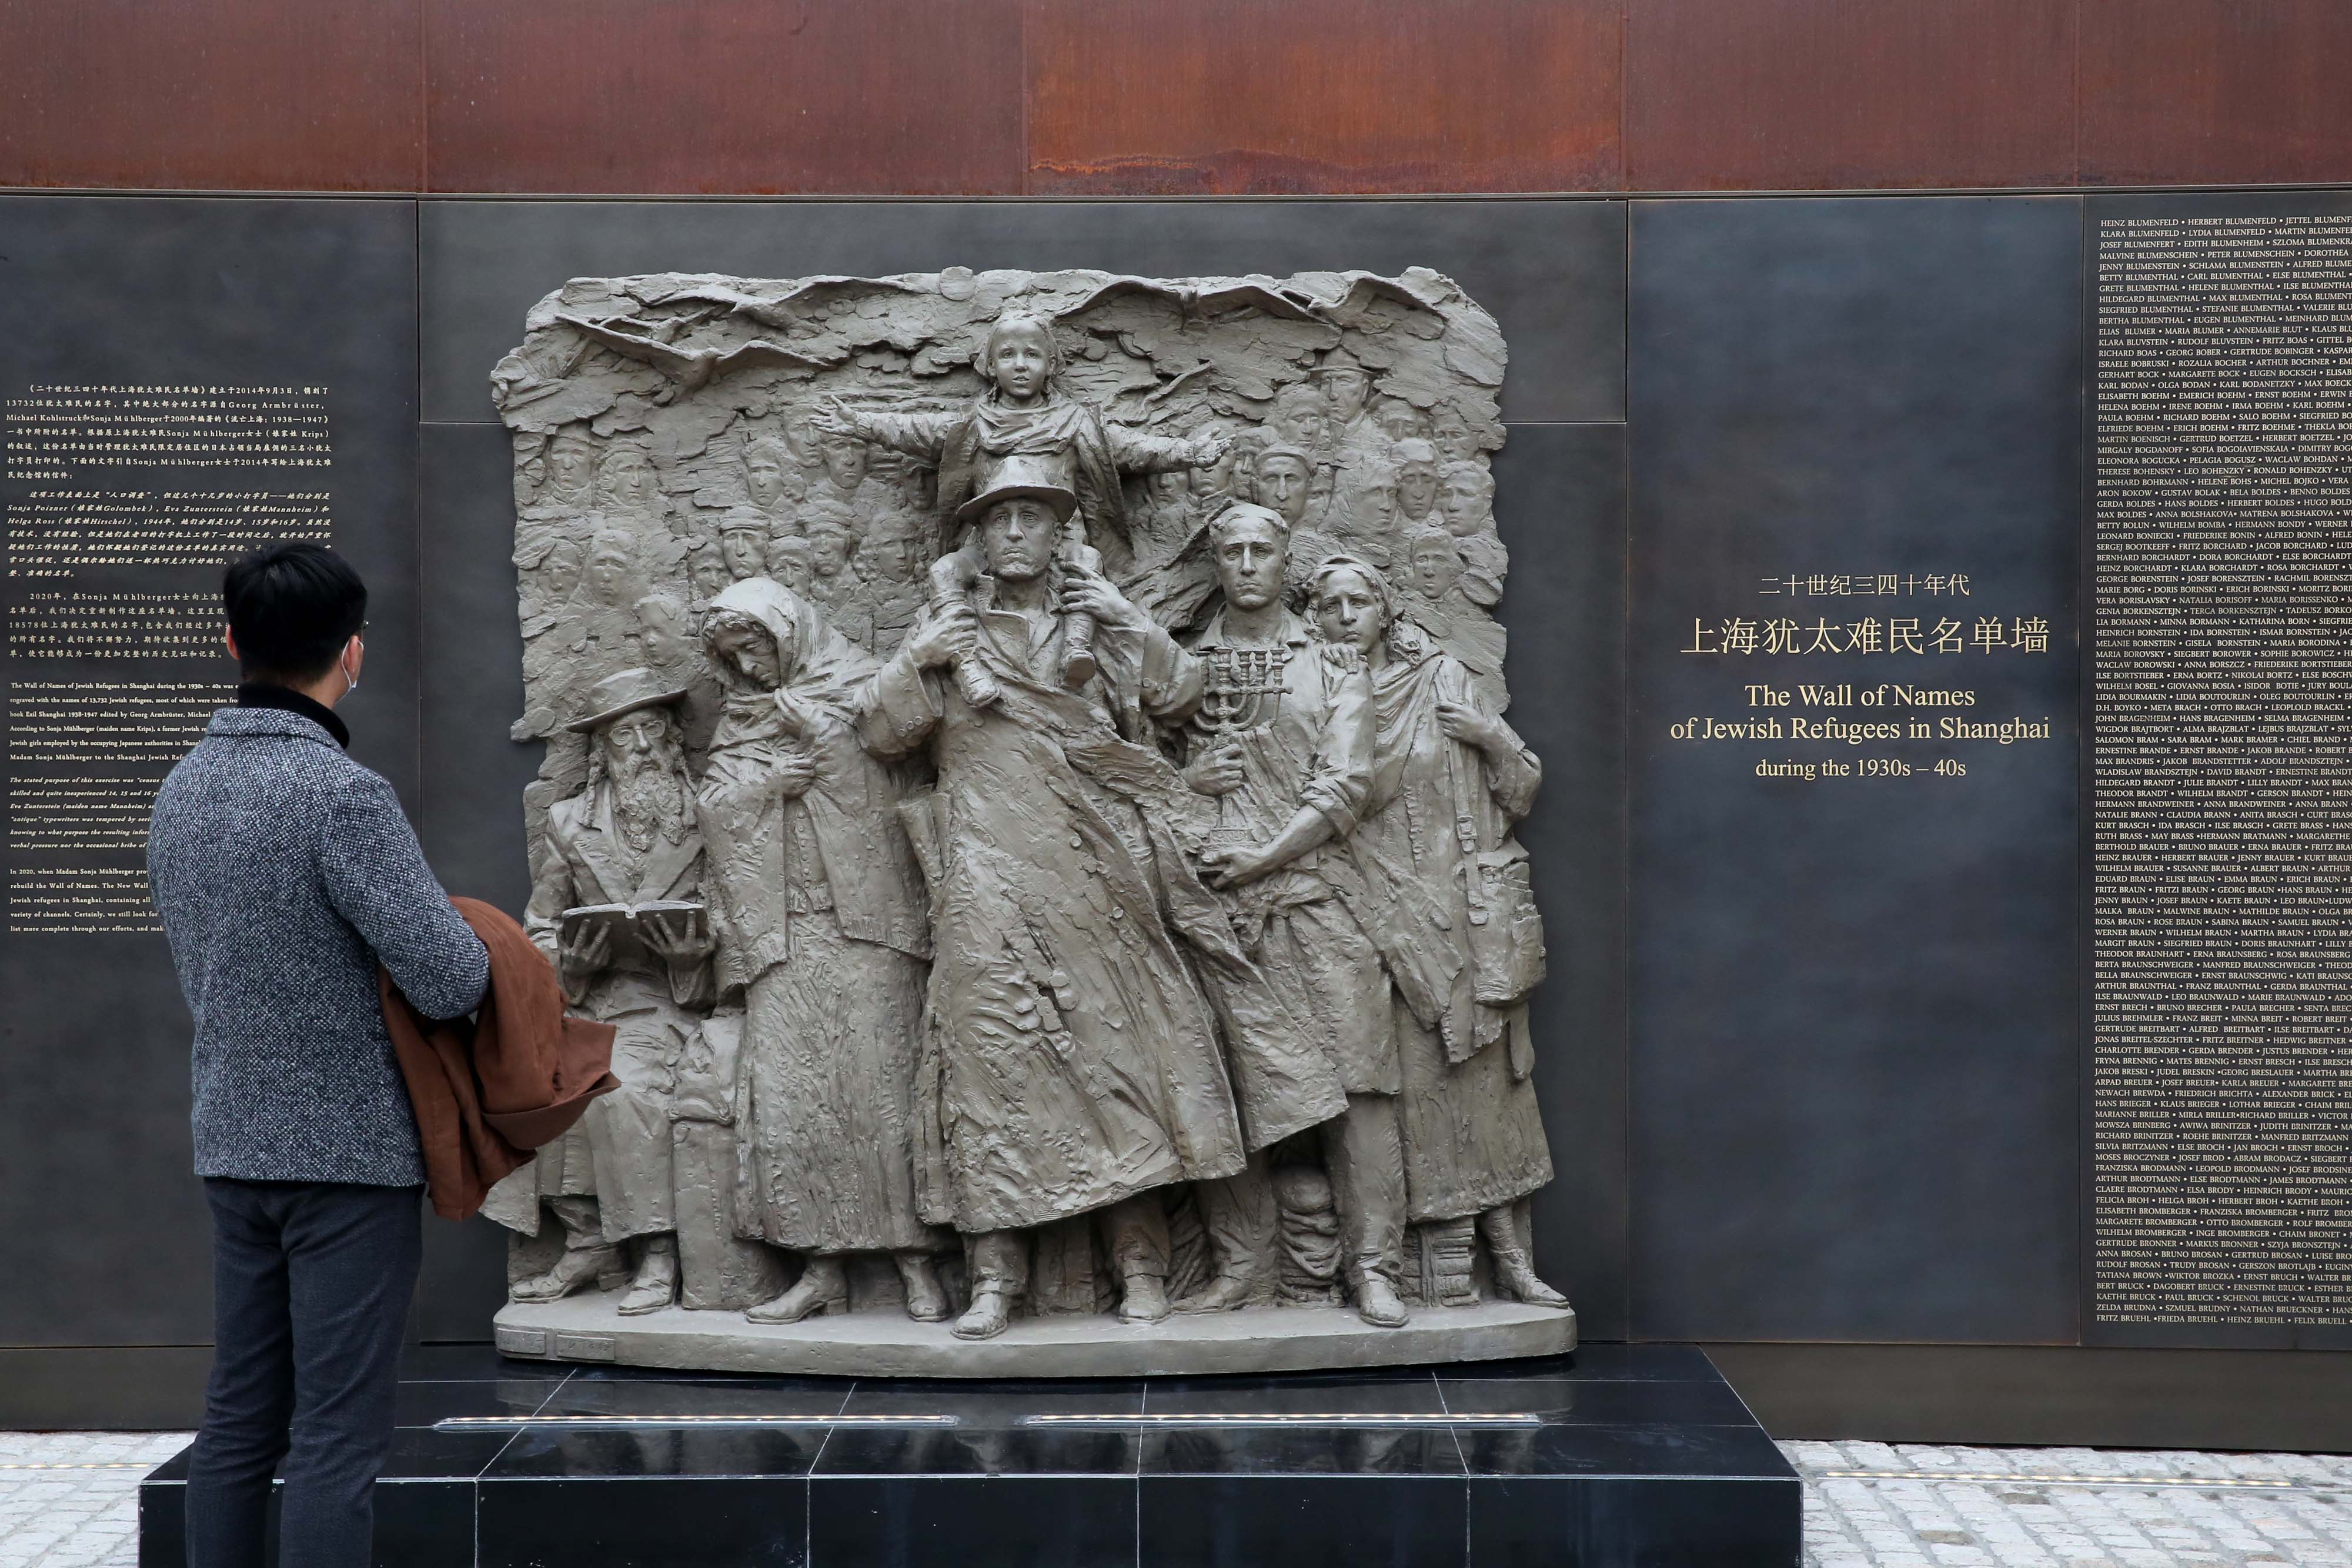 上海犹太纪念馆图片